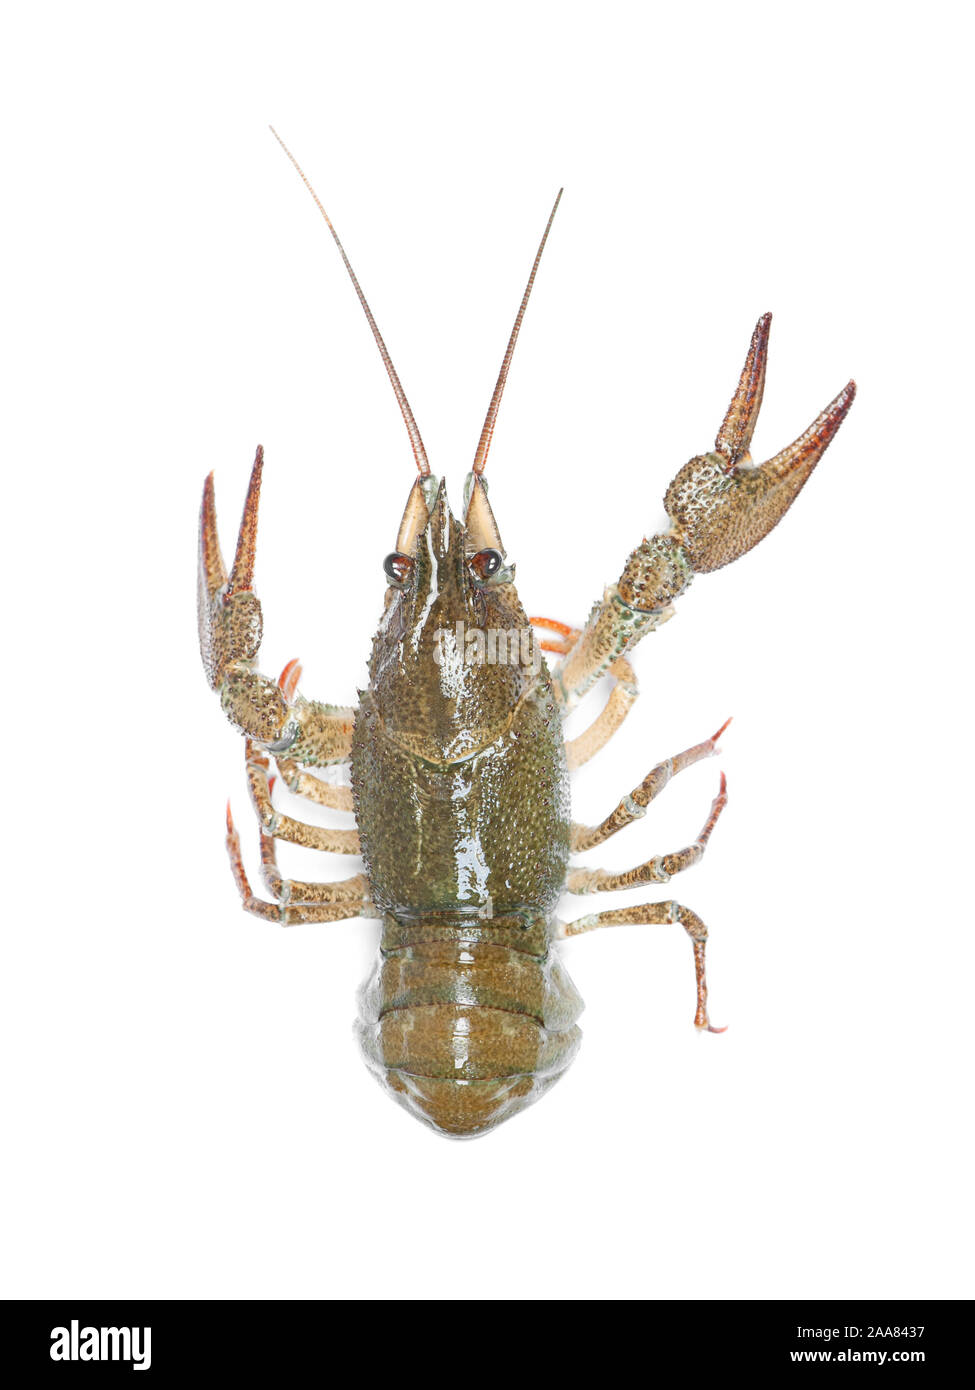 Alive crawfish isolated on white background Stock Photo